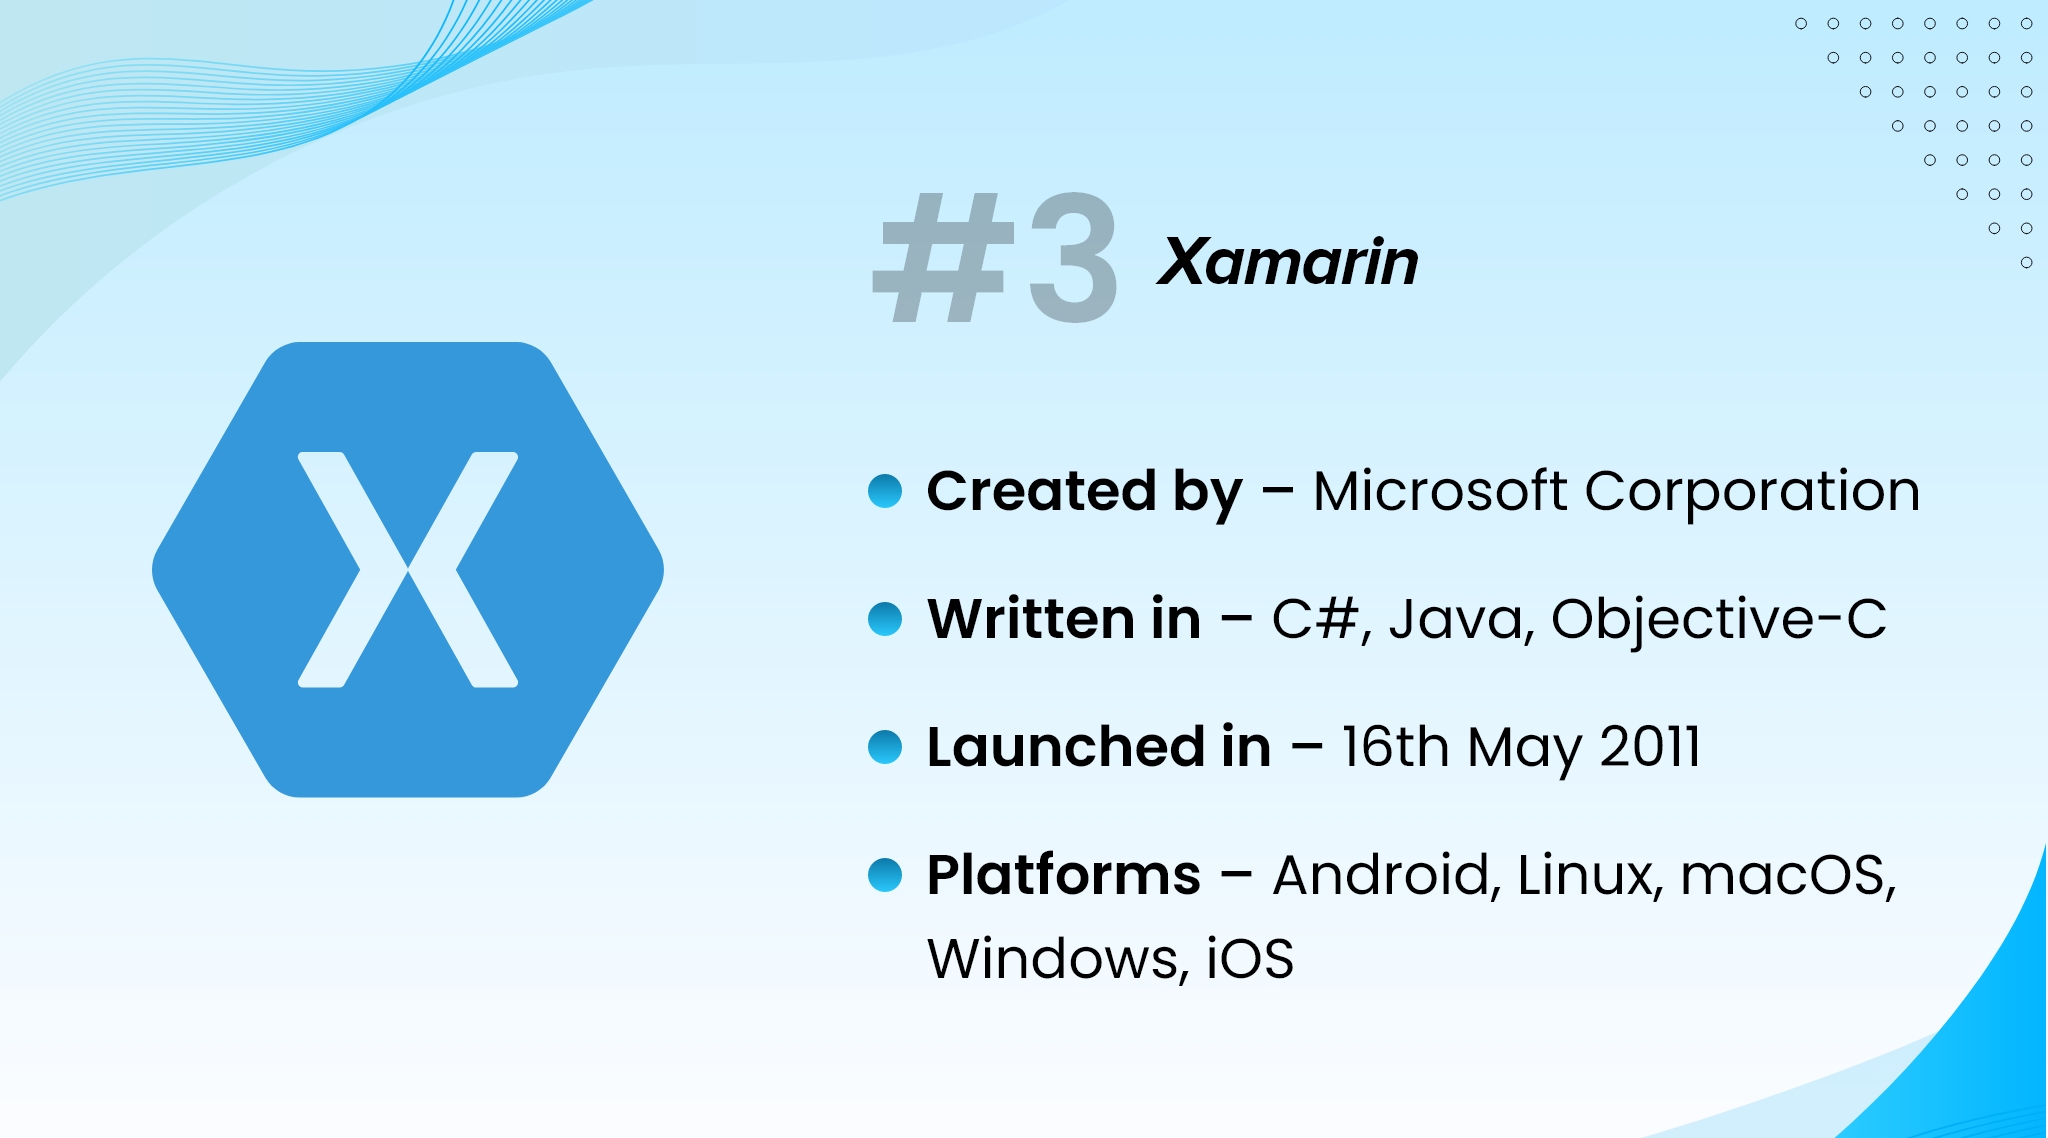 Xamarin framework for cross-platform development